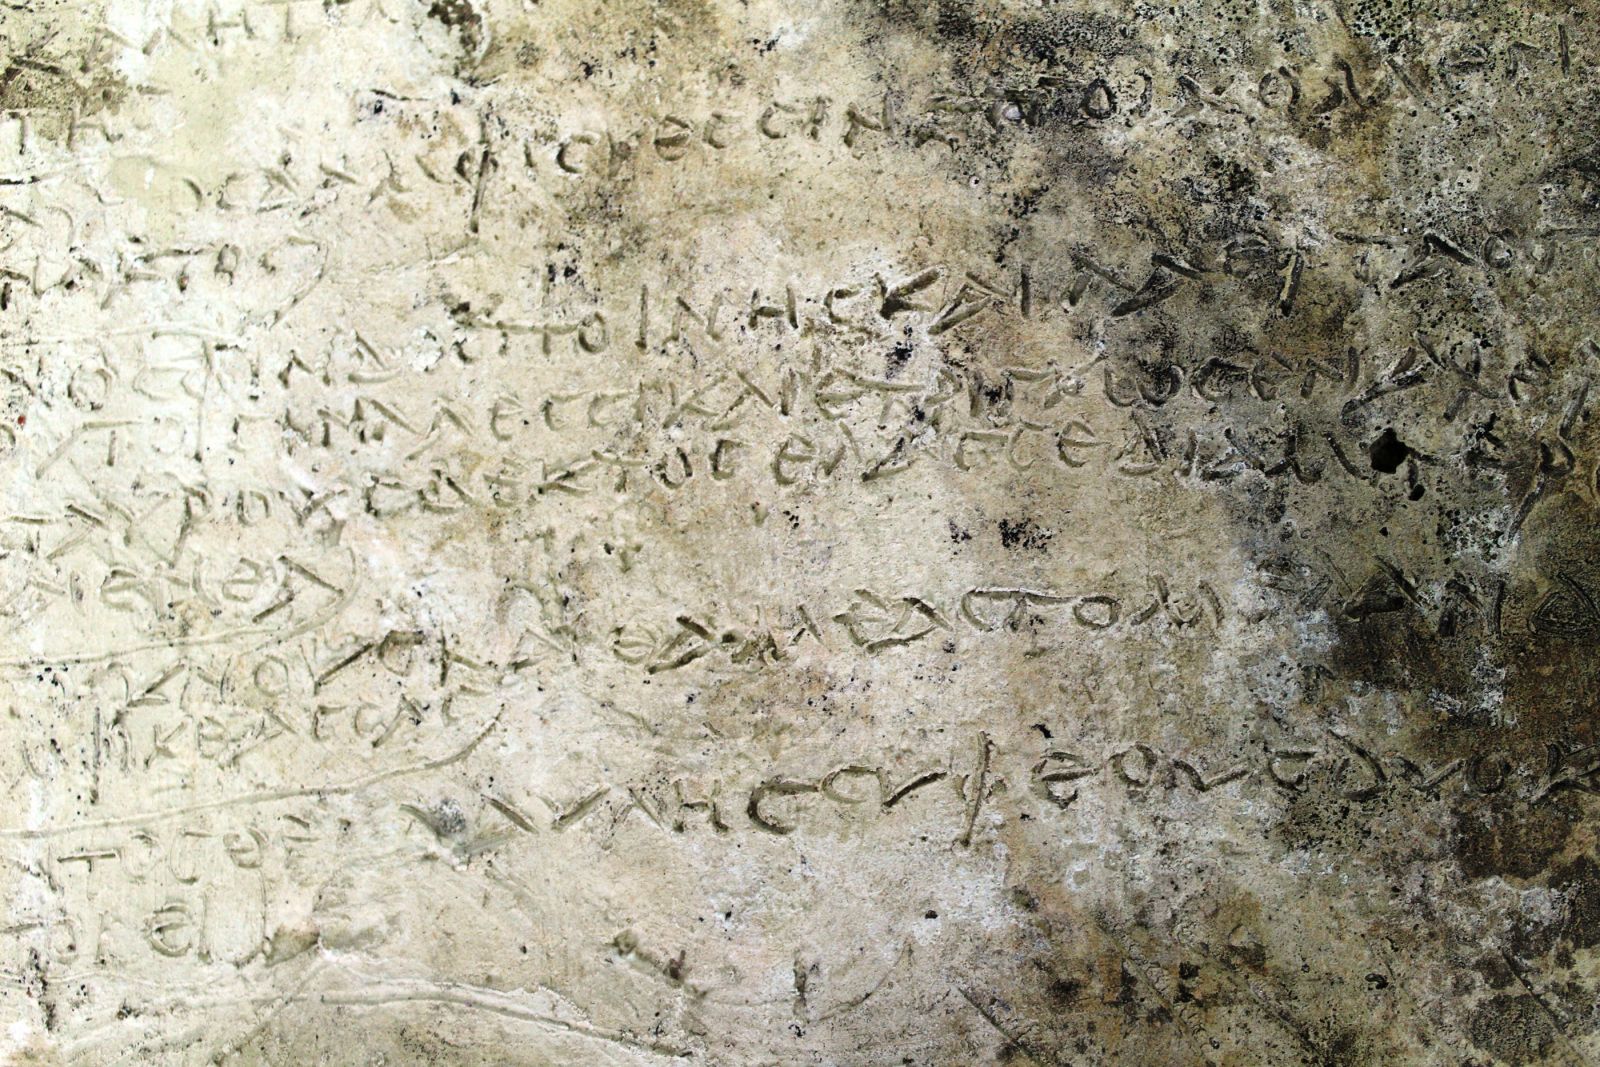 Σπουδαία αρχαιολογική ανακάλυψη - Βρέθηκε πήλινη πλάκα με στίχους της Οδύσσειας